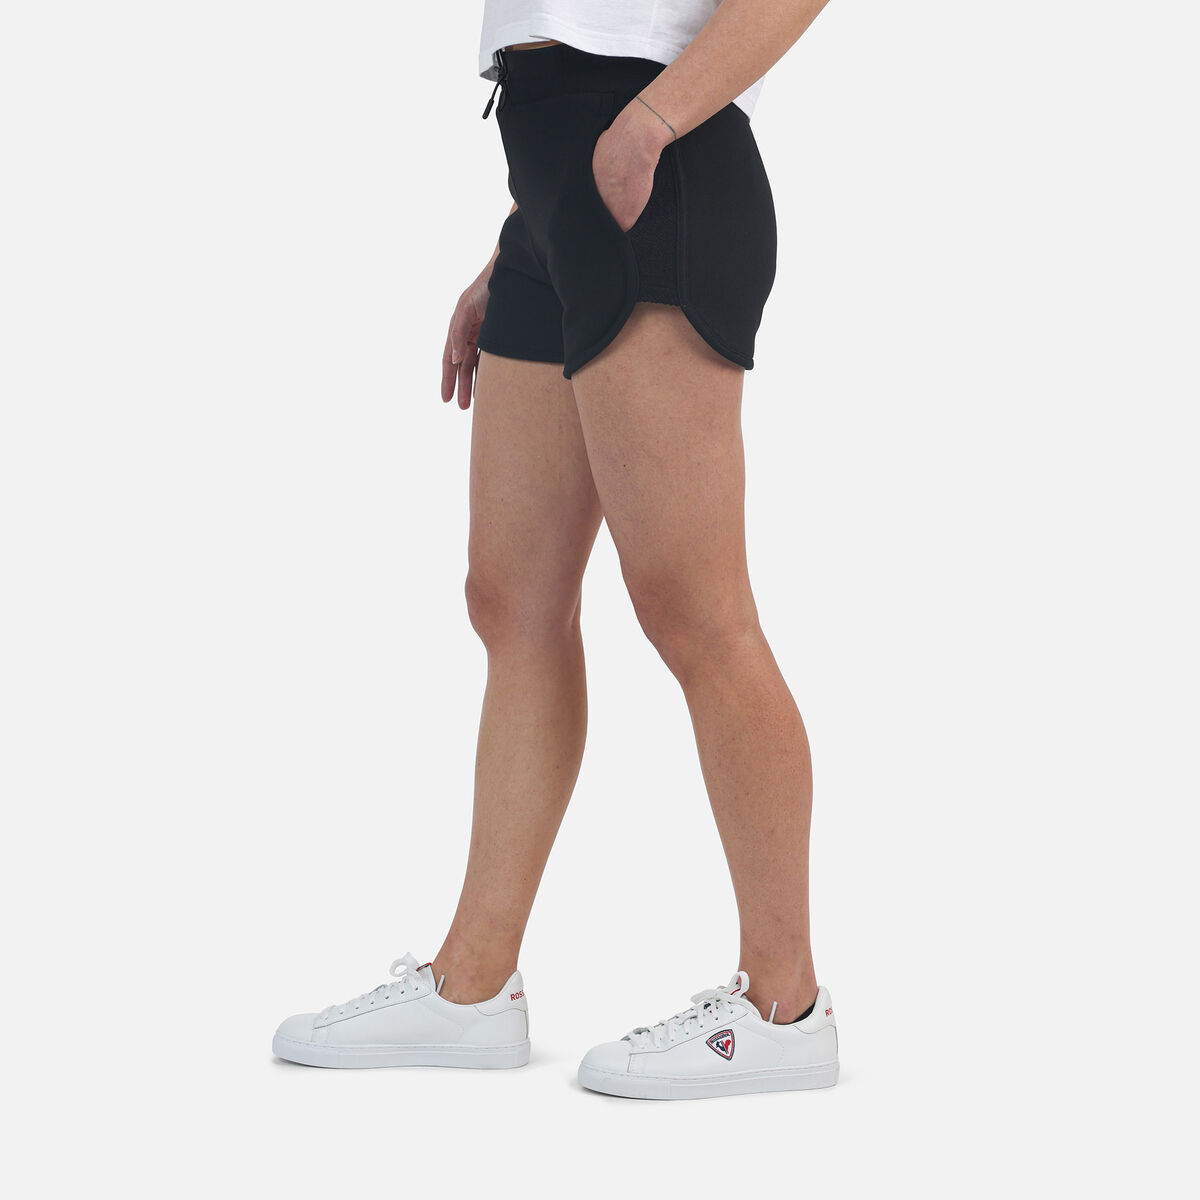 Pantalones cortos cómodos de algodón para mujer